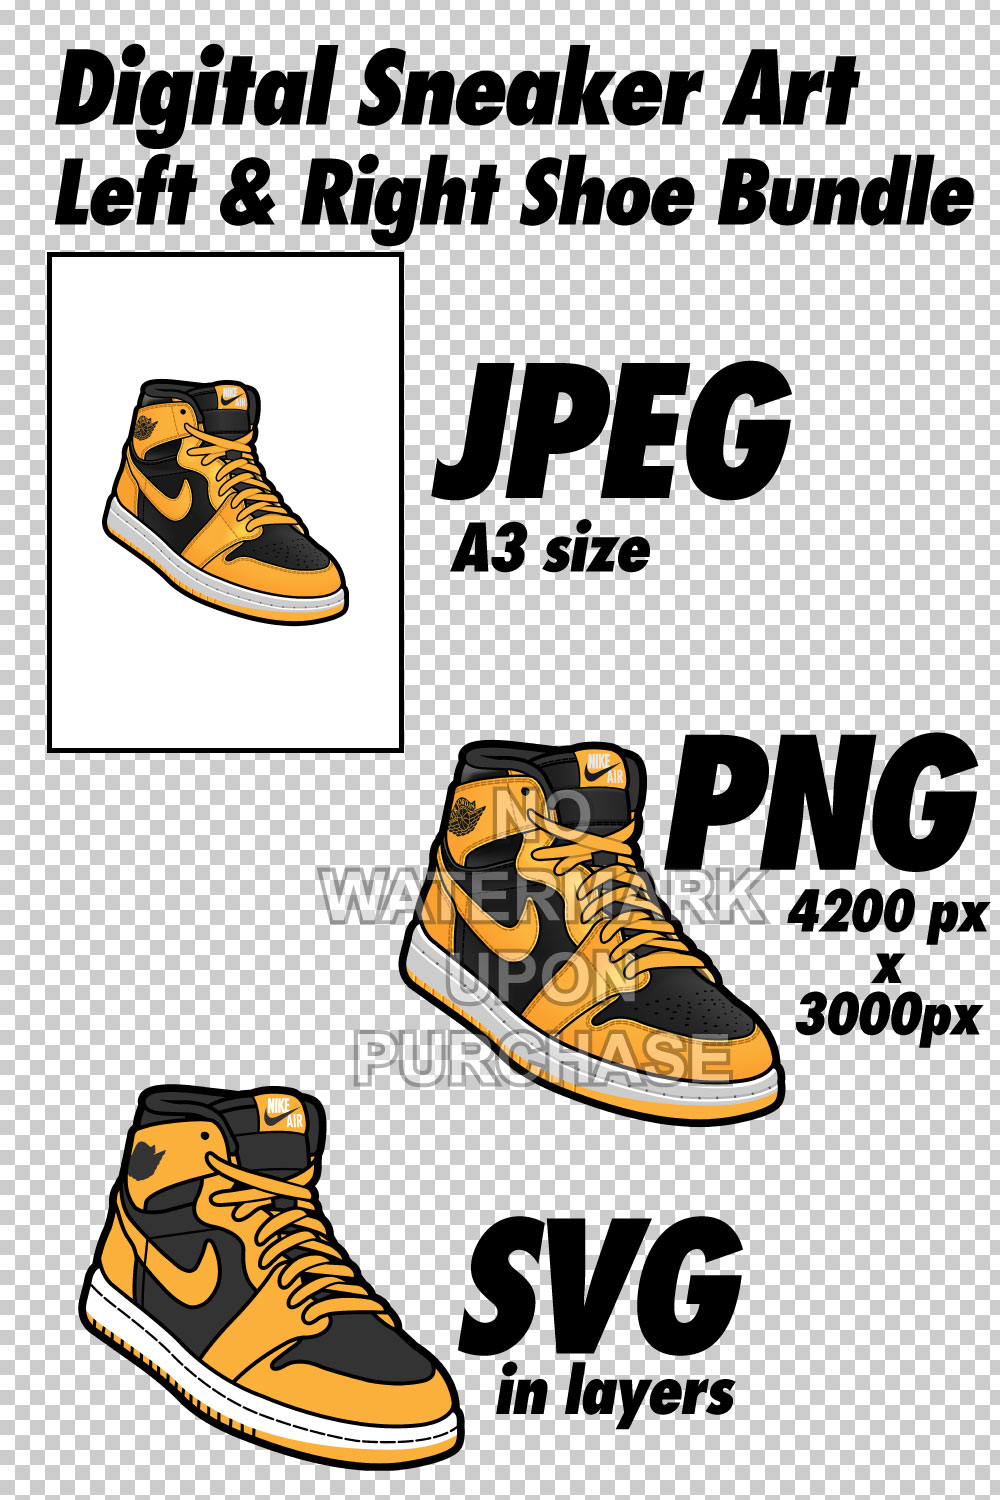 Air Jordan 1 Pollen JPEG PNG SVG right & left shoe bundle pinterest preview image.